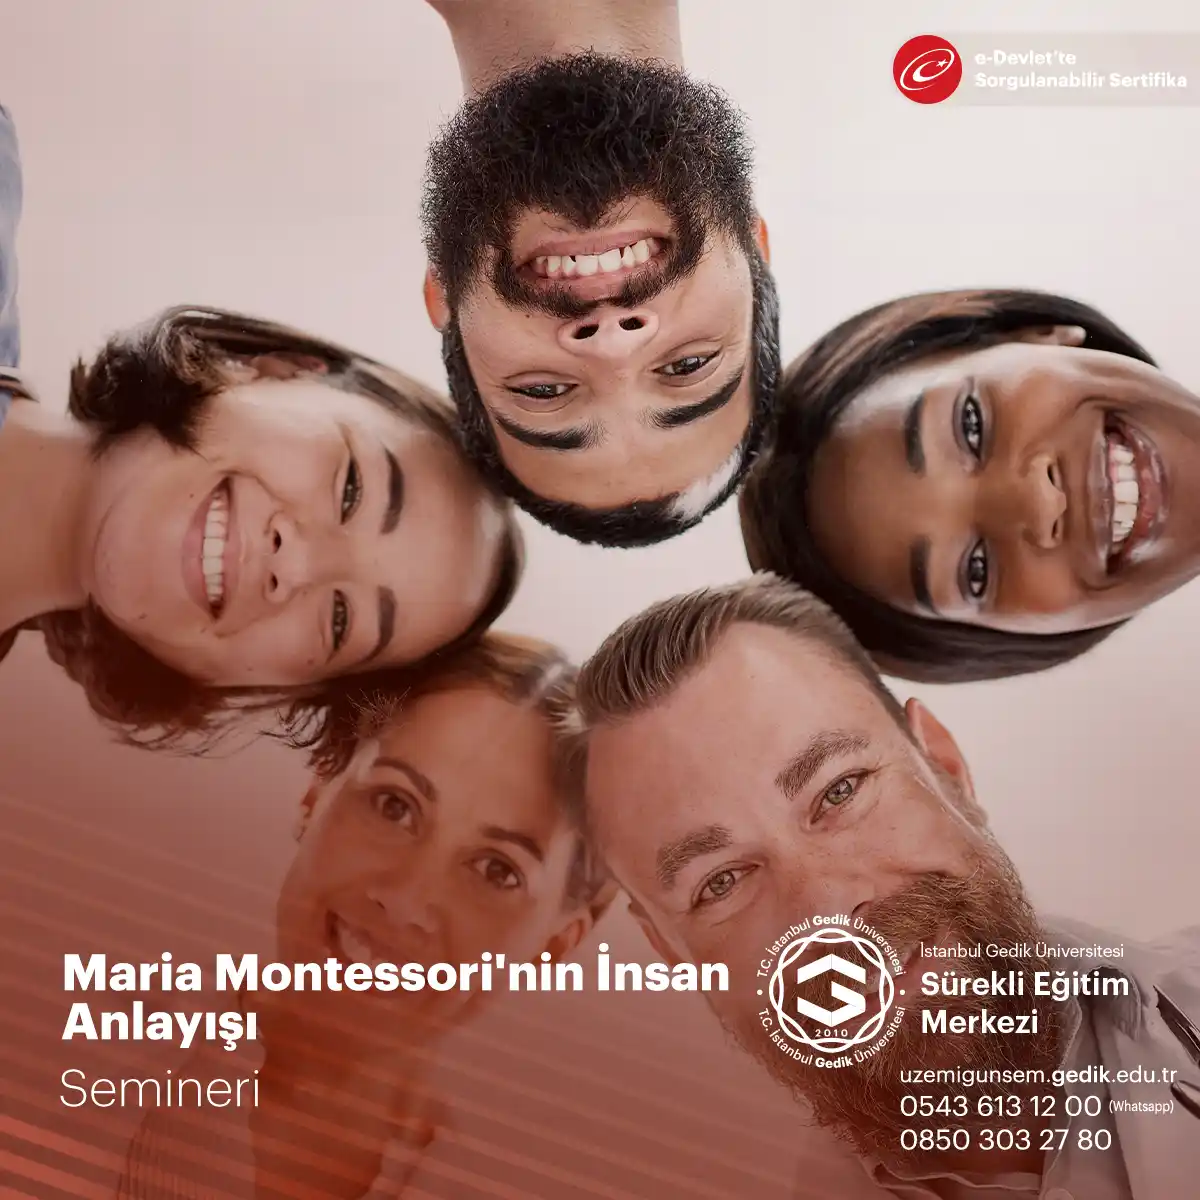 Maria Montessori'nin insan anlayışı, çocukların doğuştan gelen bir içsel potansiyele sahip olduğunu ve doğal bir şekilde öğrenme isteği taşıdıklarını öne sürer.